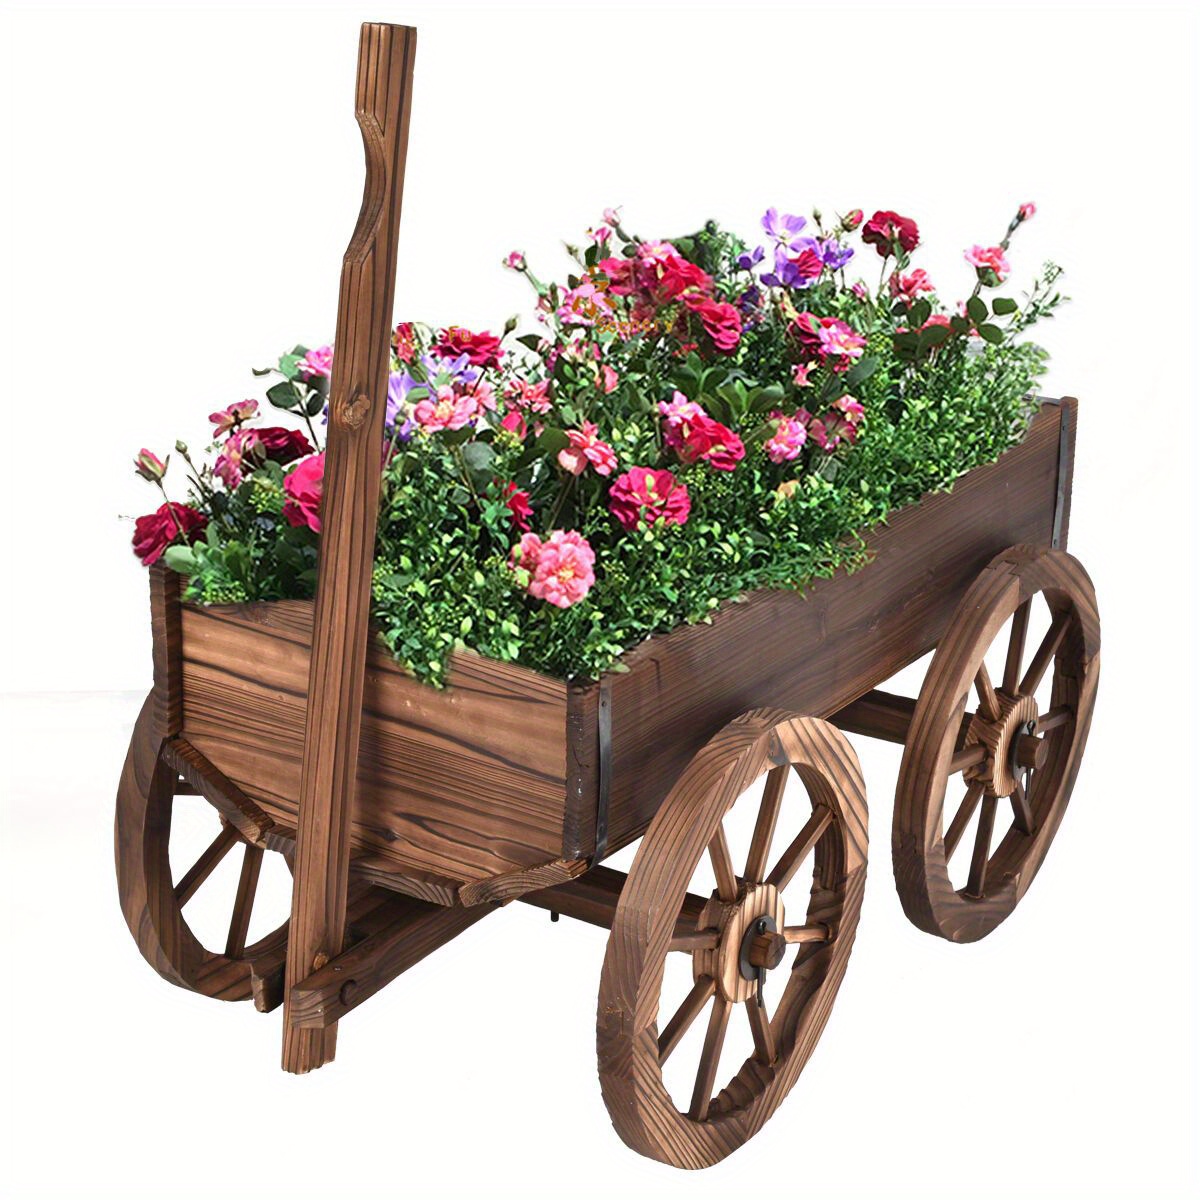 

Multigot Wood Wagon Flower Planter Pot Stand W/wheels Home Garden Outdoor Decor New